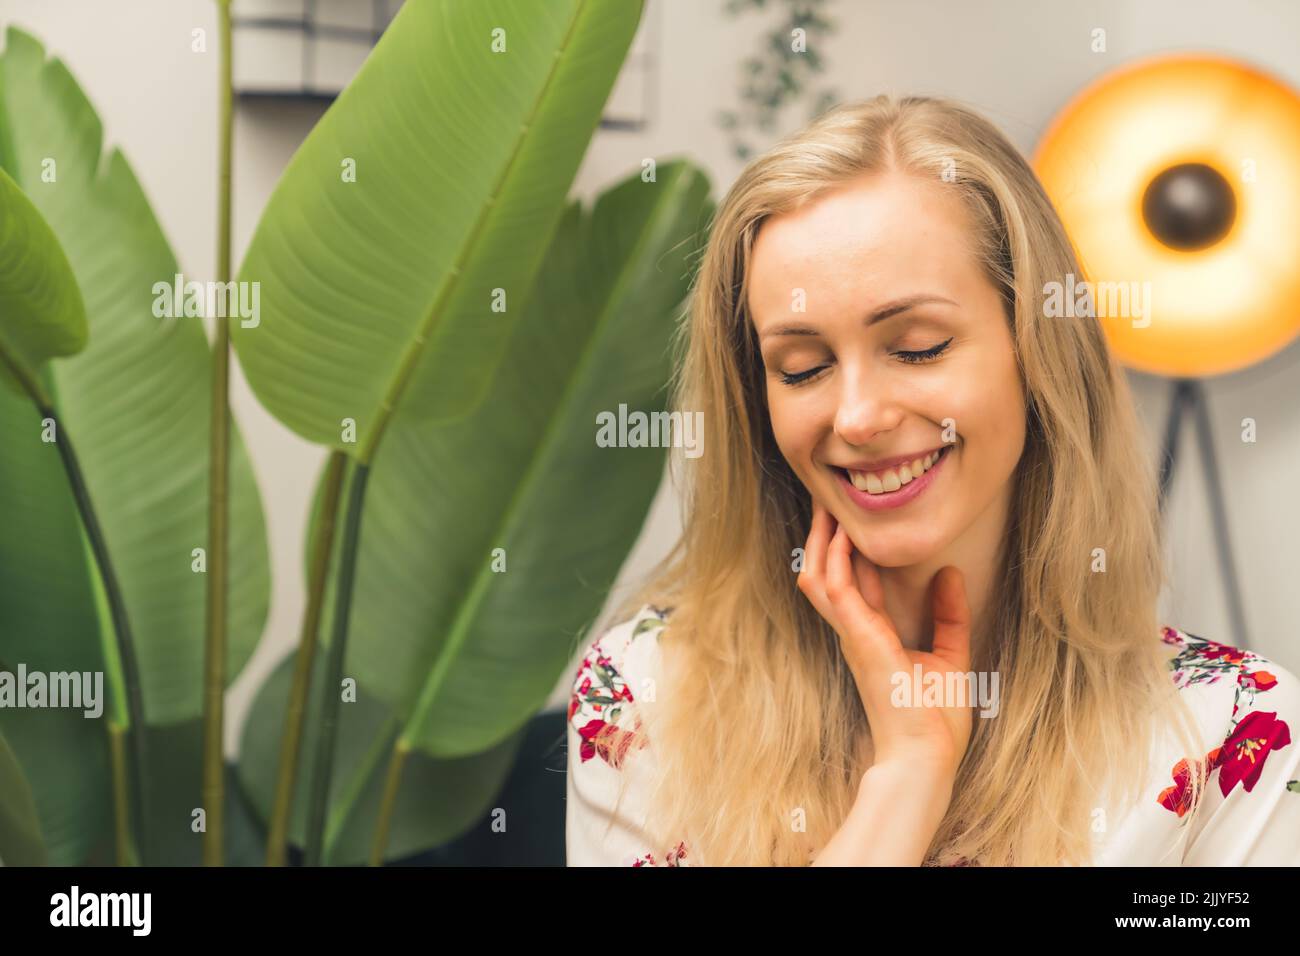 Bionda caucasica sorridente ragazza in una stanza con una pianta. Foto di alta qualità Foto Stock